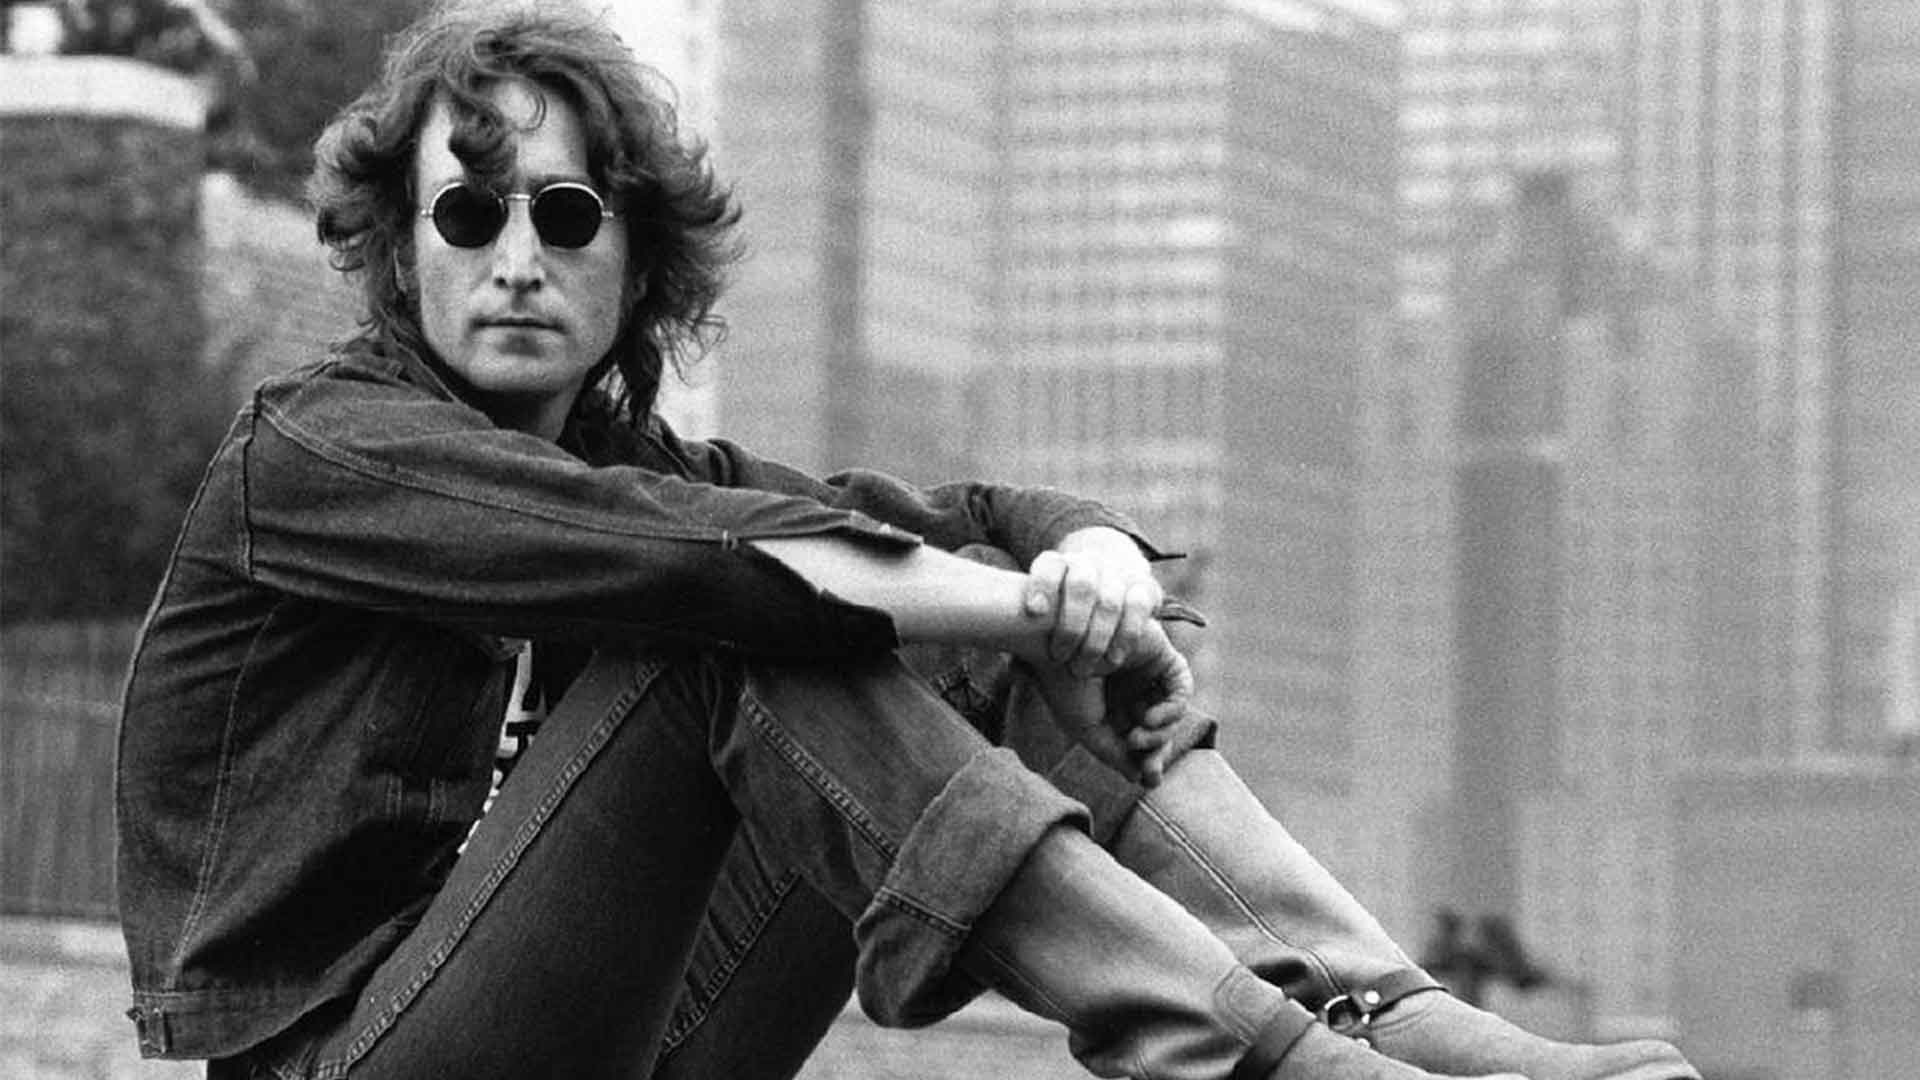 La segunda vida de John Lennon | Clímax